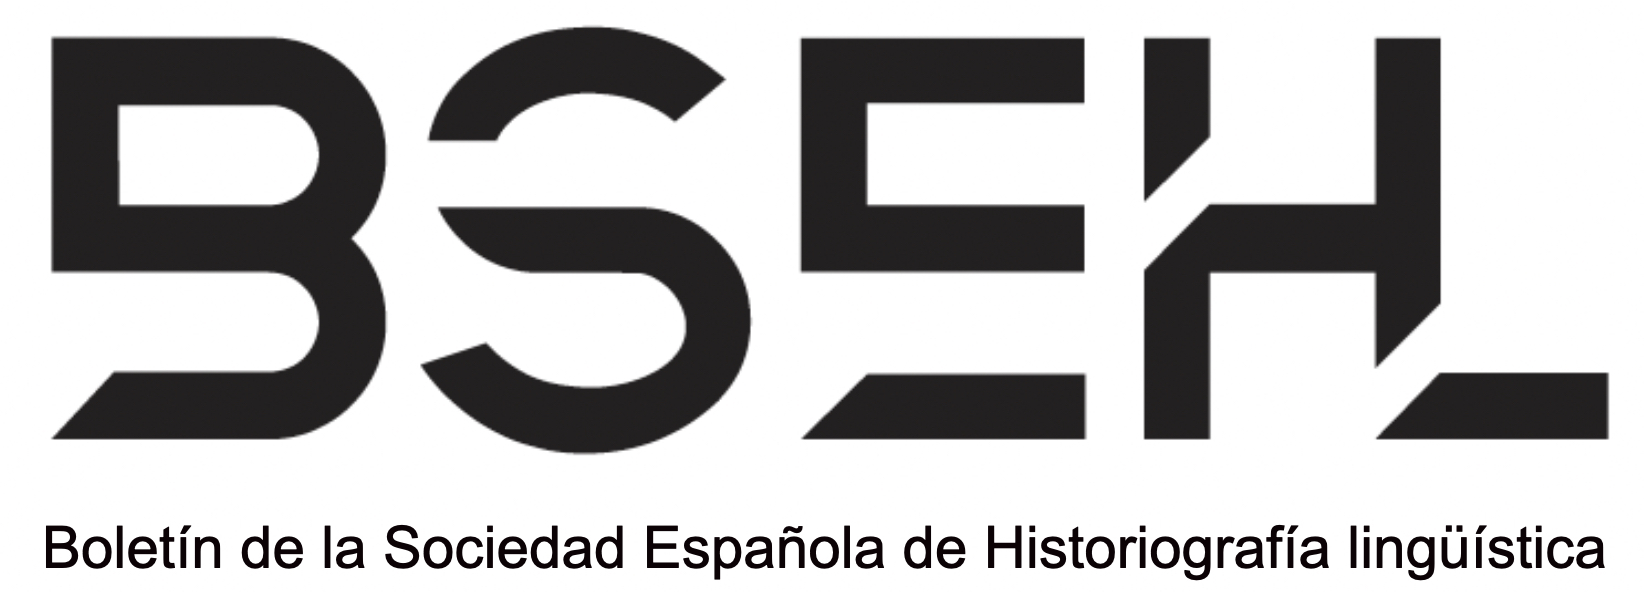 Boletín de la Sociedad Española de Historiografía Lingüística